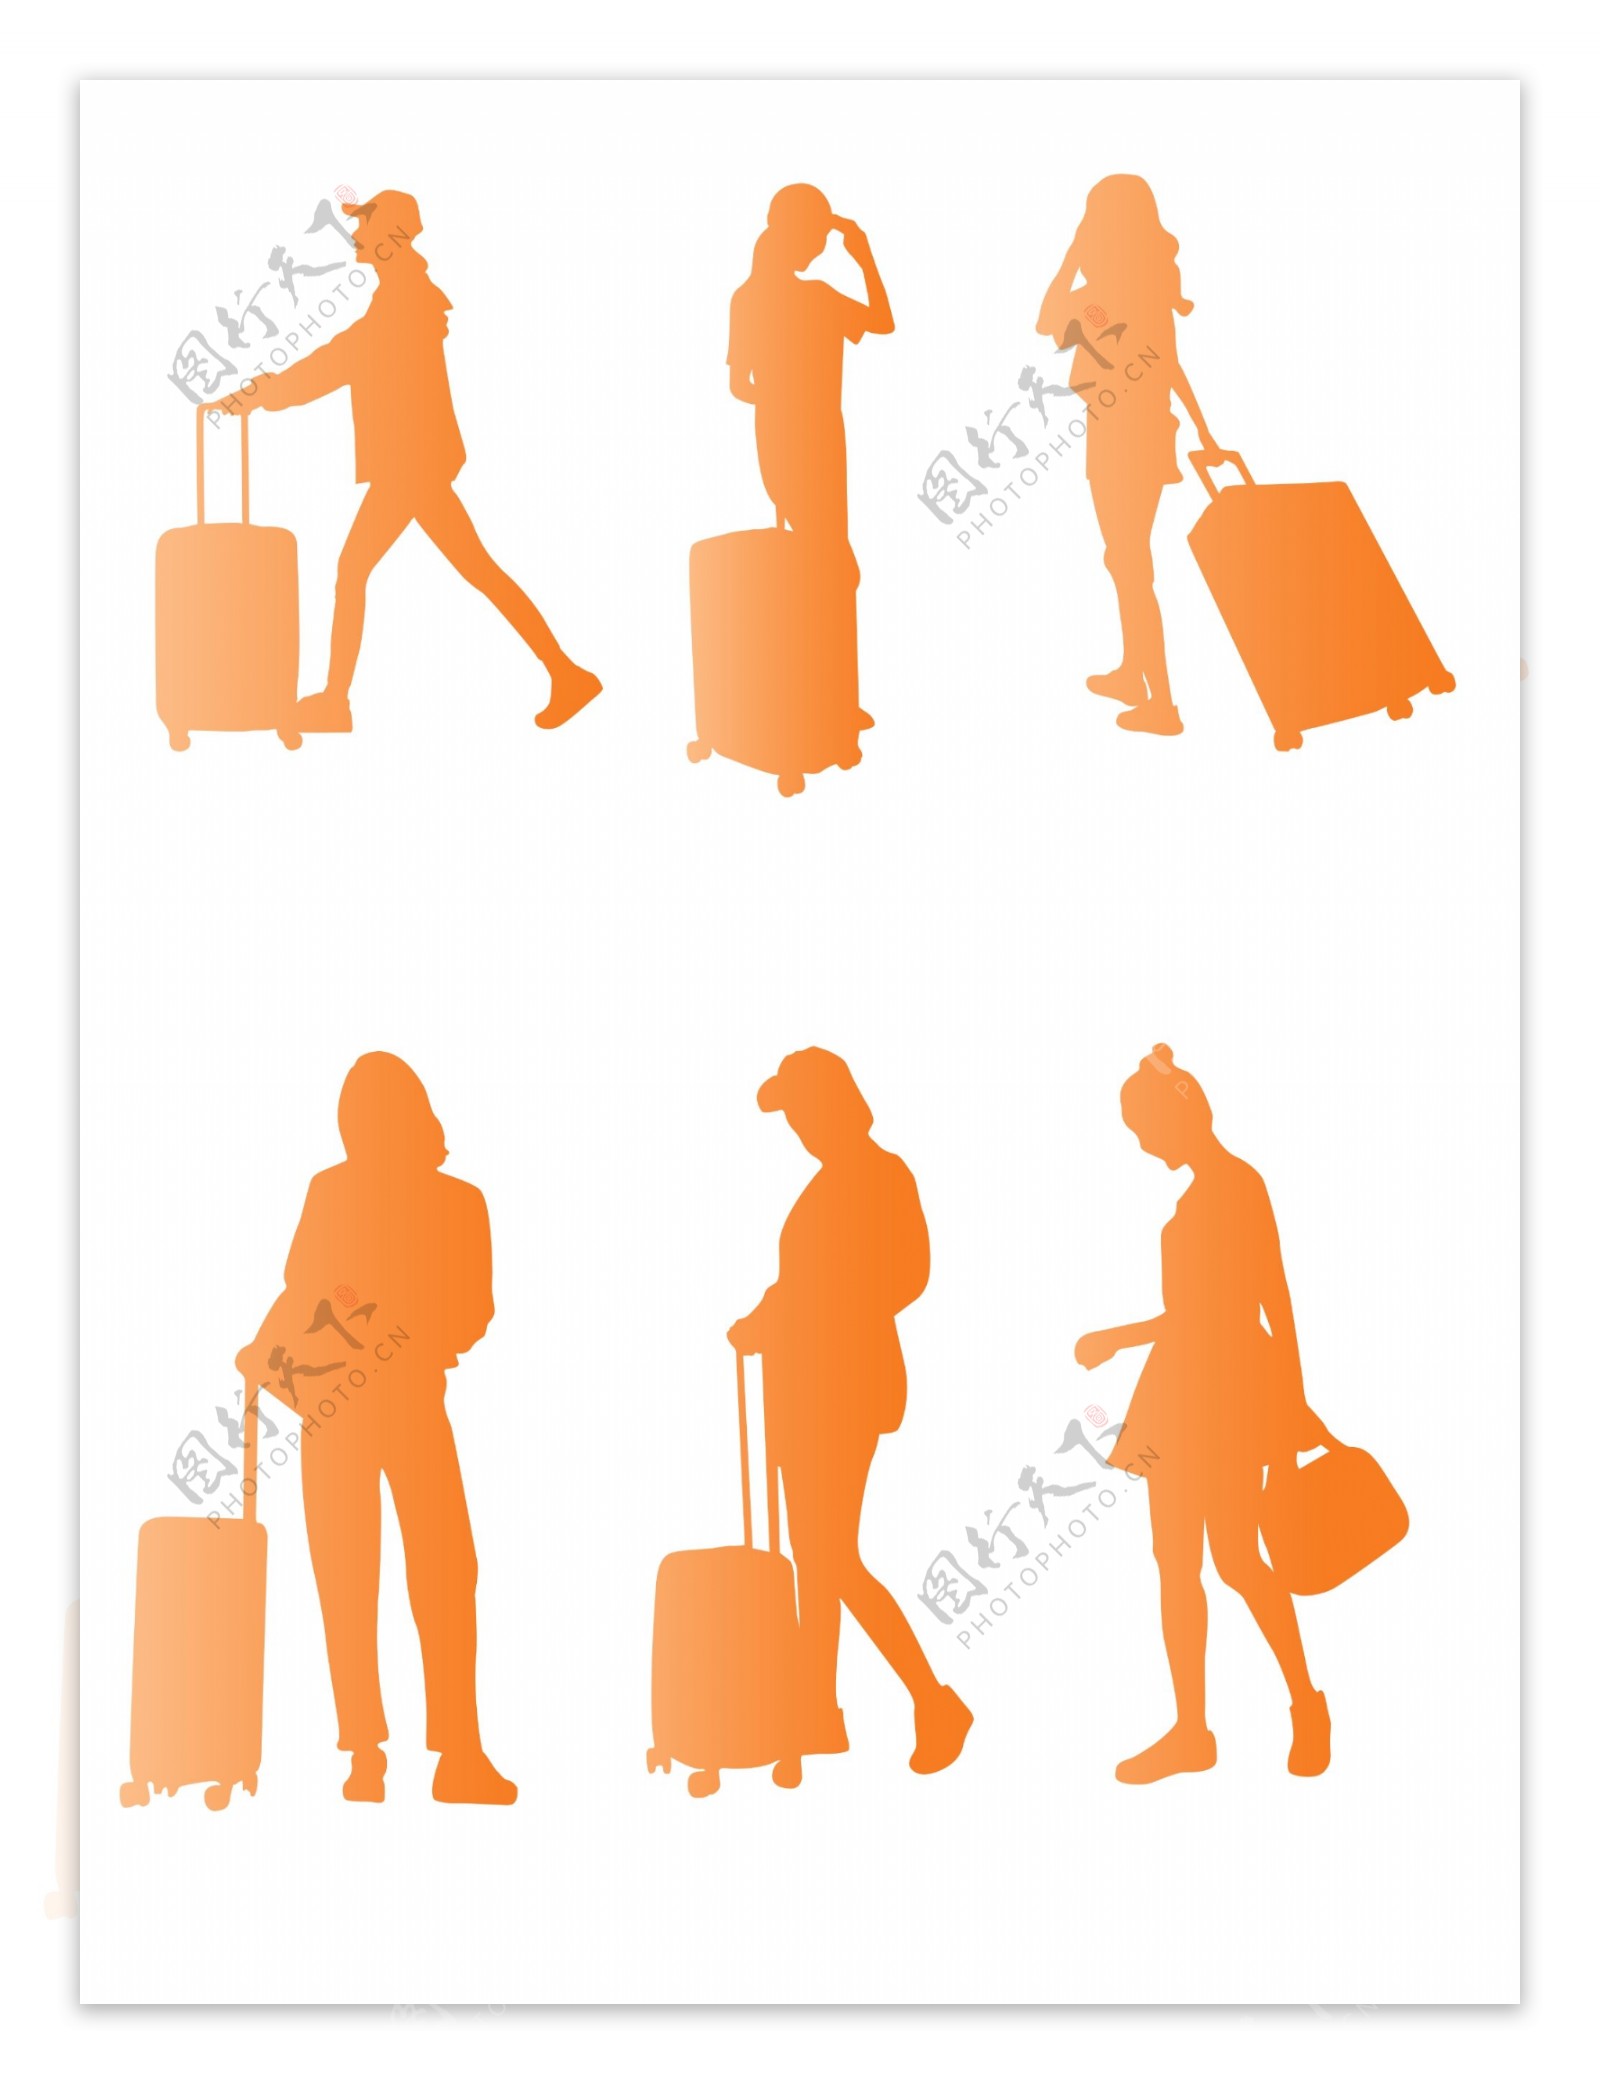 简约风手拿行李箱的女性橙色人物剪影元素